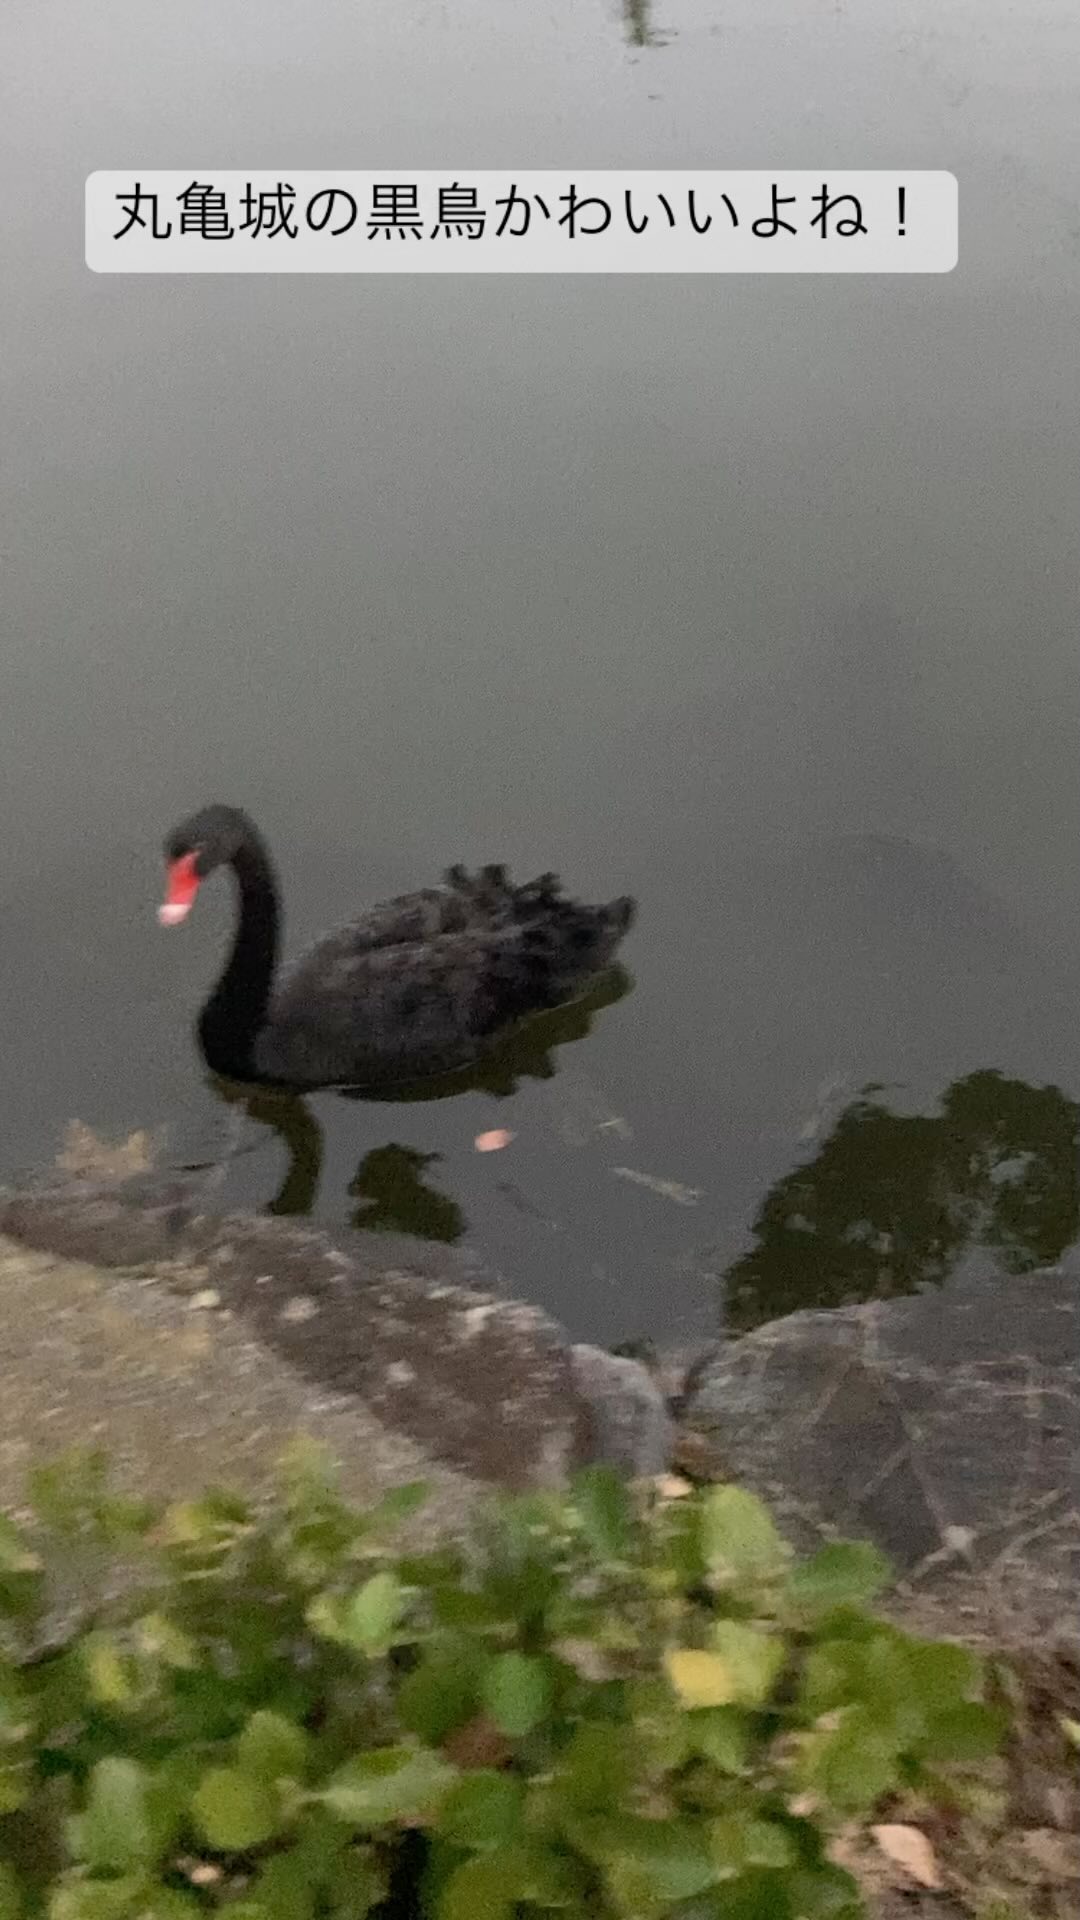 丸亀城の黒鳥はかわいいですよ！

#丸亀城
#丸亀市
#黒鳥
#動物
#鳥
#丸亀市